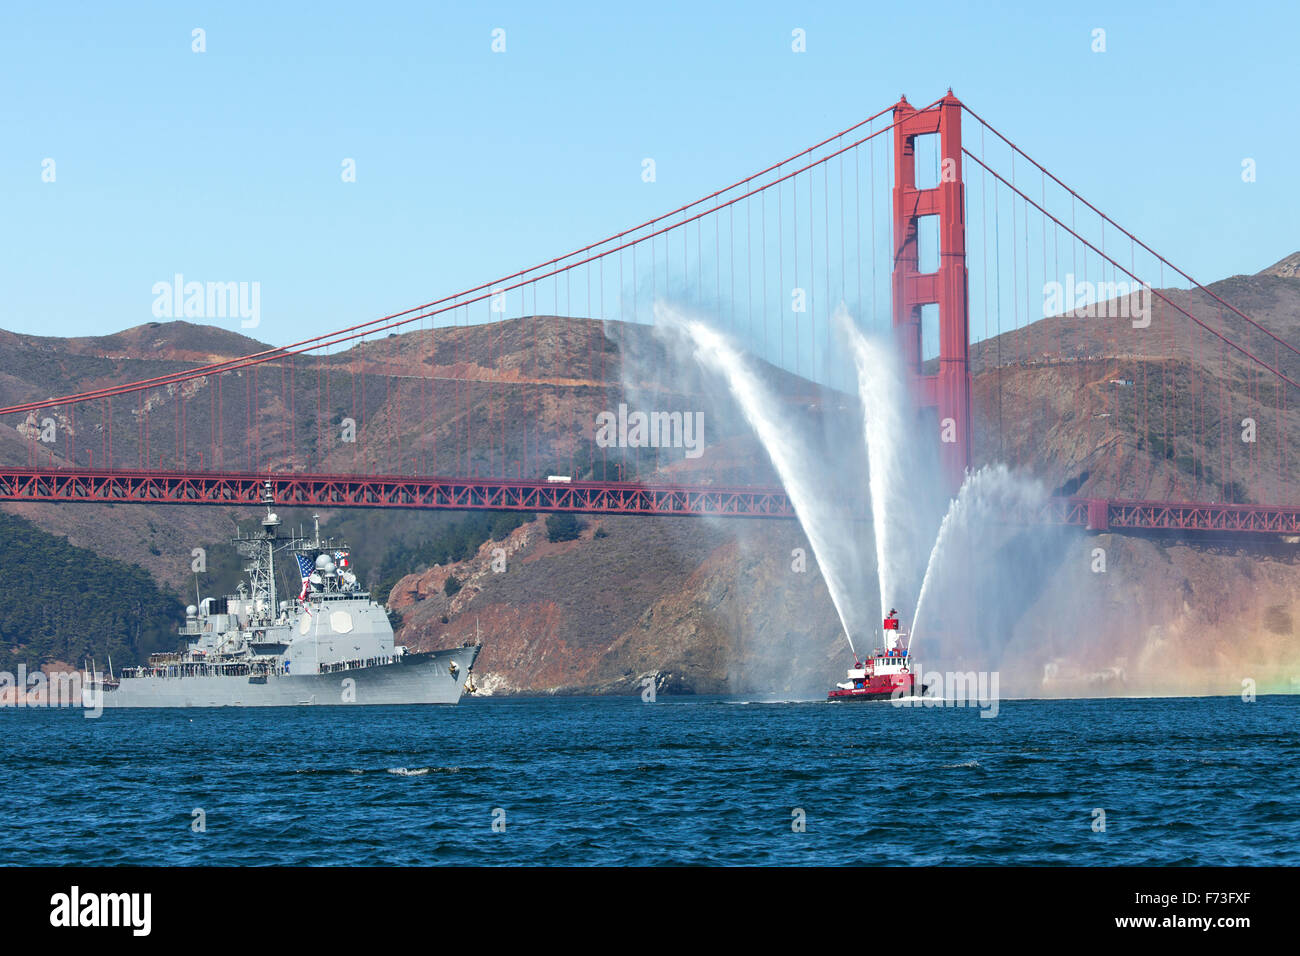 La classe Arleigh Burke destroyer lance-missiles USS Ross (DDG-71) est conduit à travers le Golden Gate. Banque D'Images